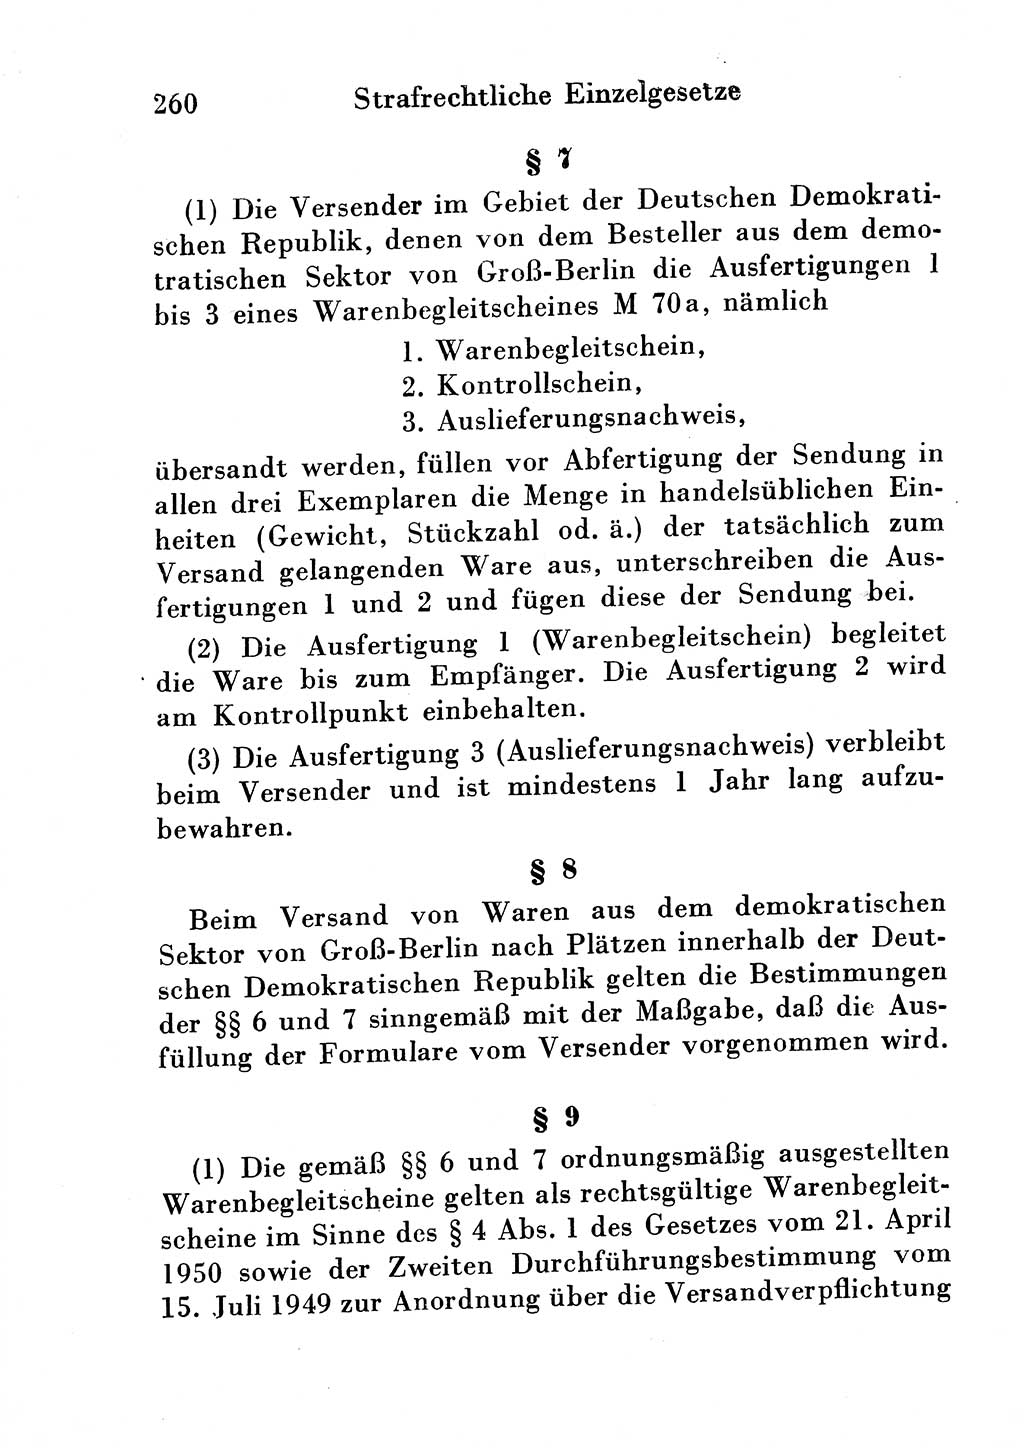 Strafgesetzbuch (StGB) und andere Strafgesetze [Deutsche Demokratische Republik (DDR)] 1954, Seite 260 (StGB Strafges. DDR 1954, S. 260)